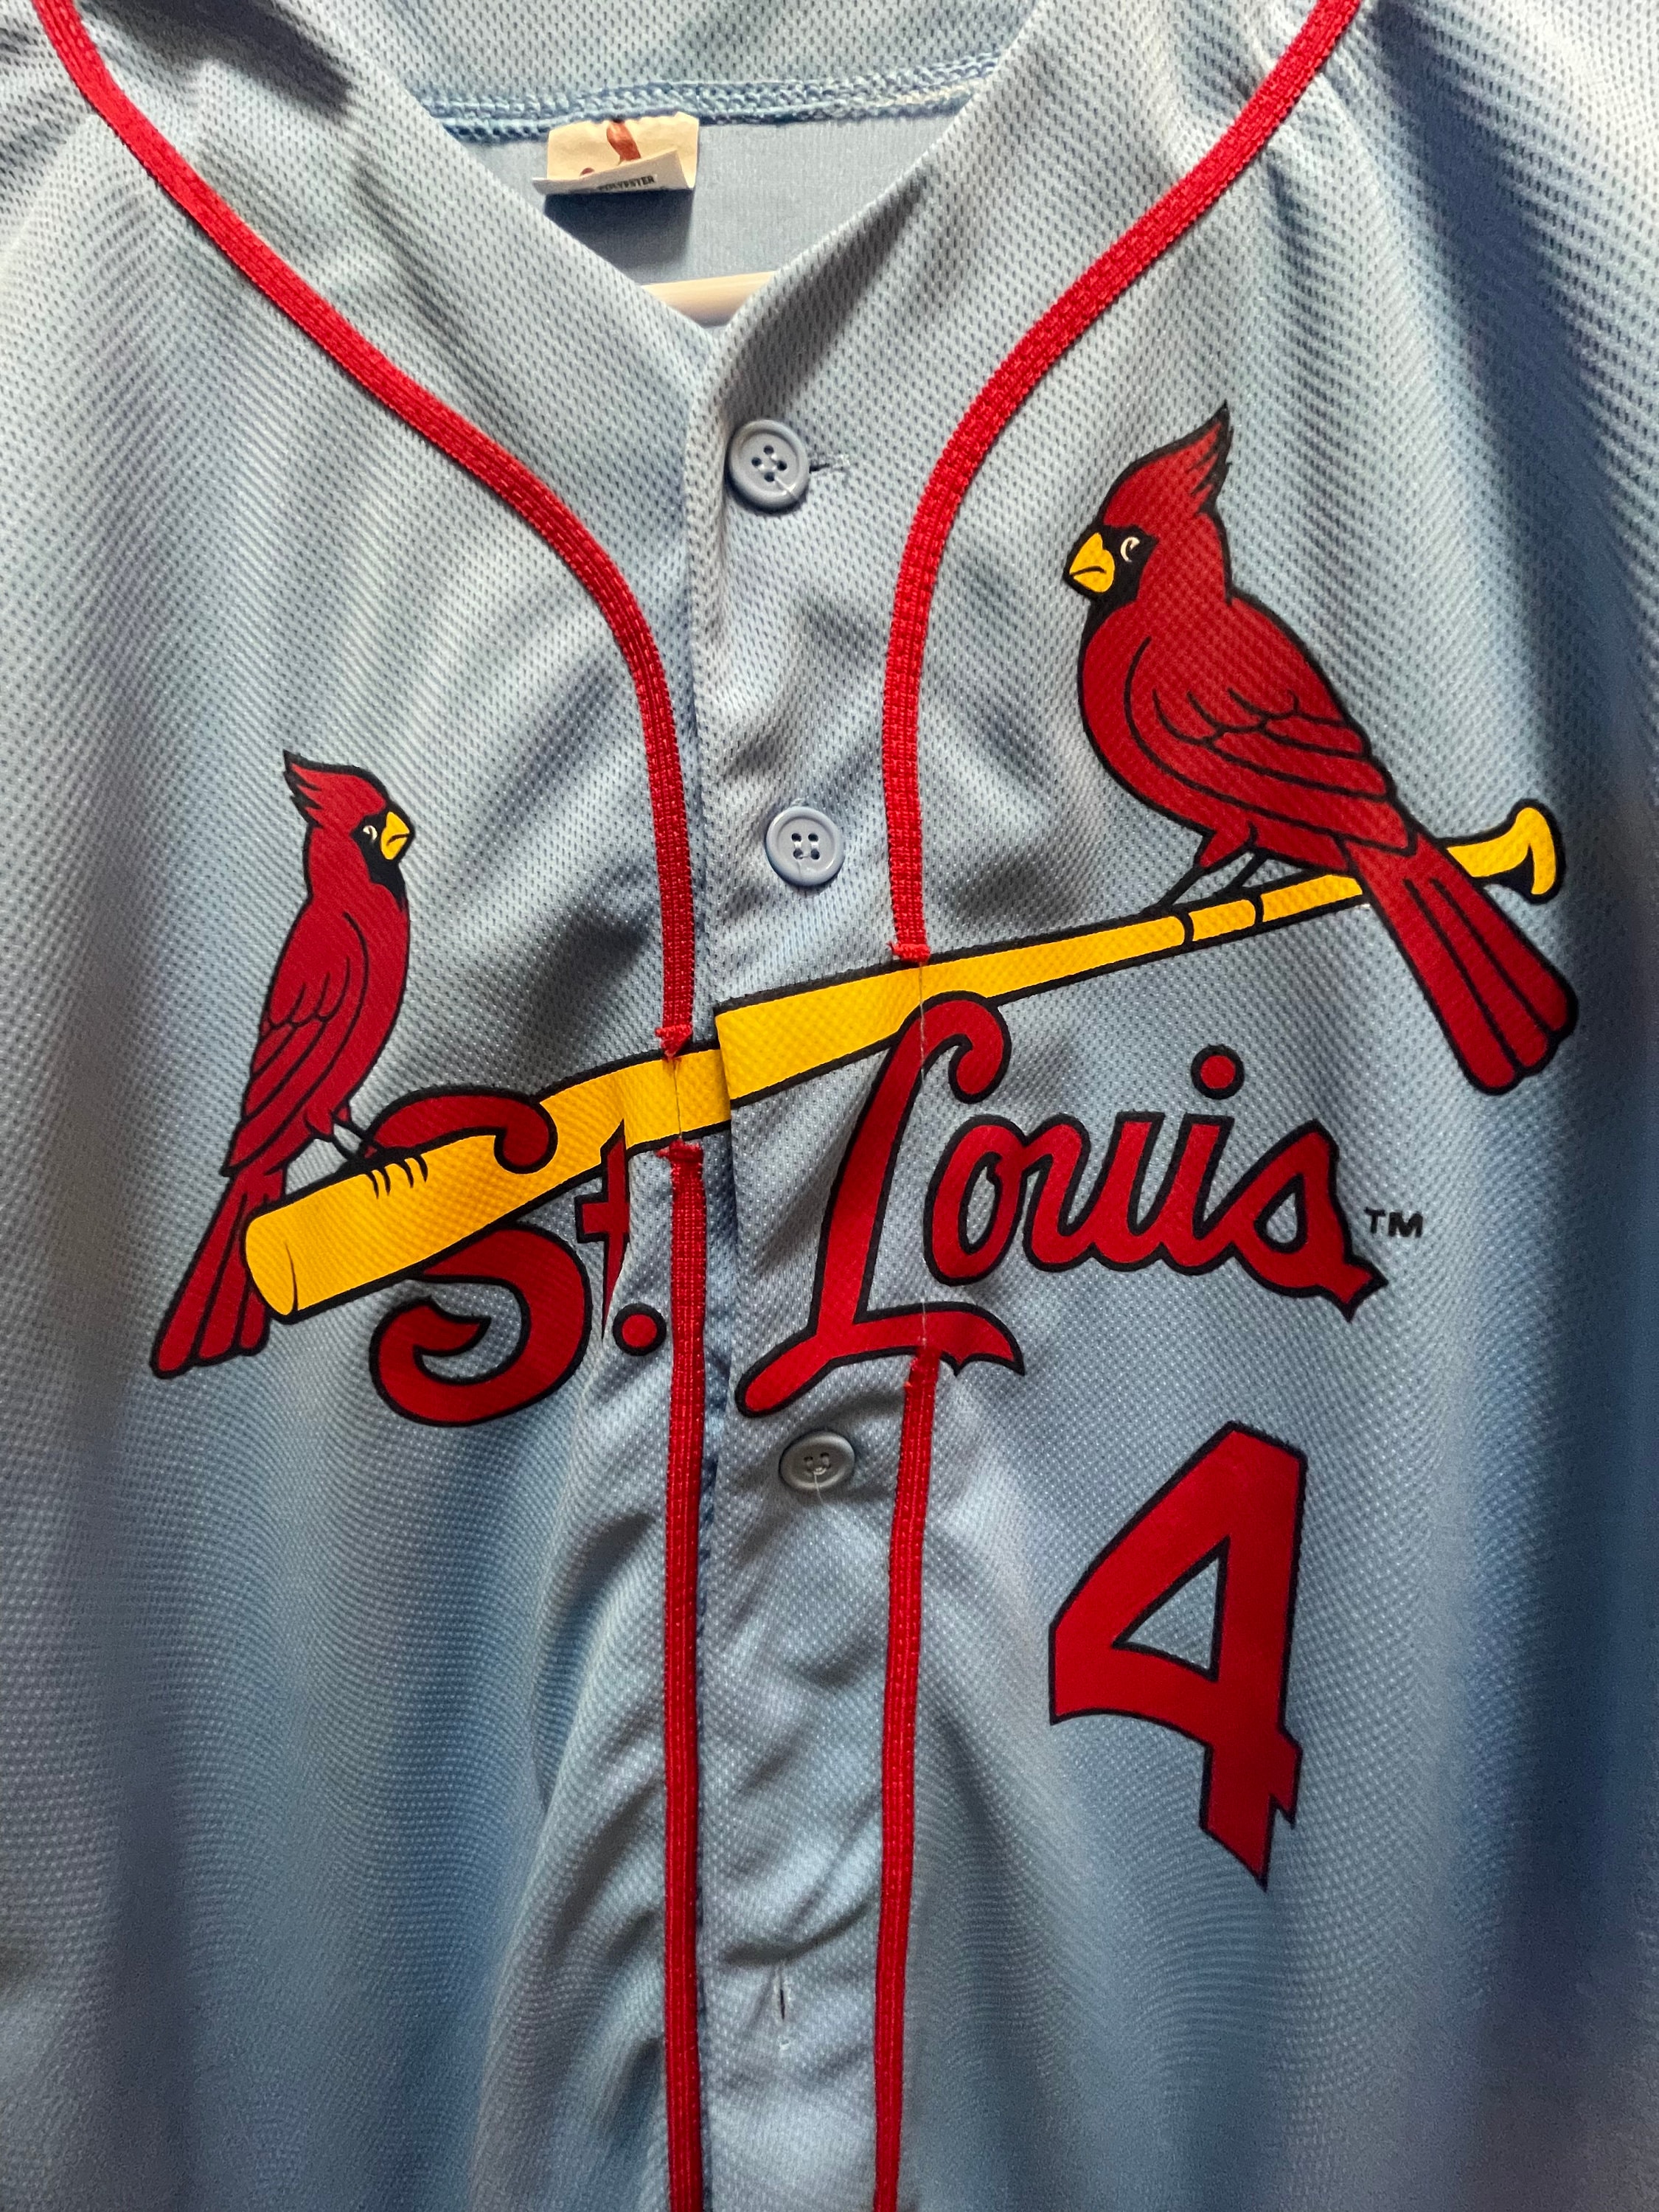 cardinals blue jersey